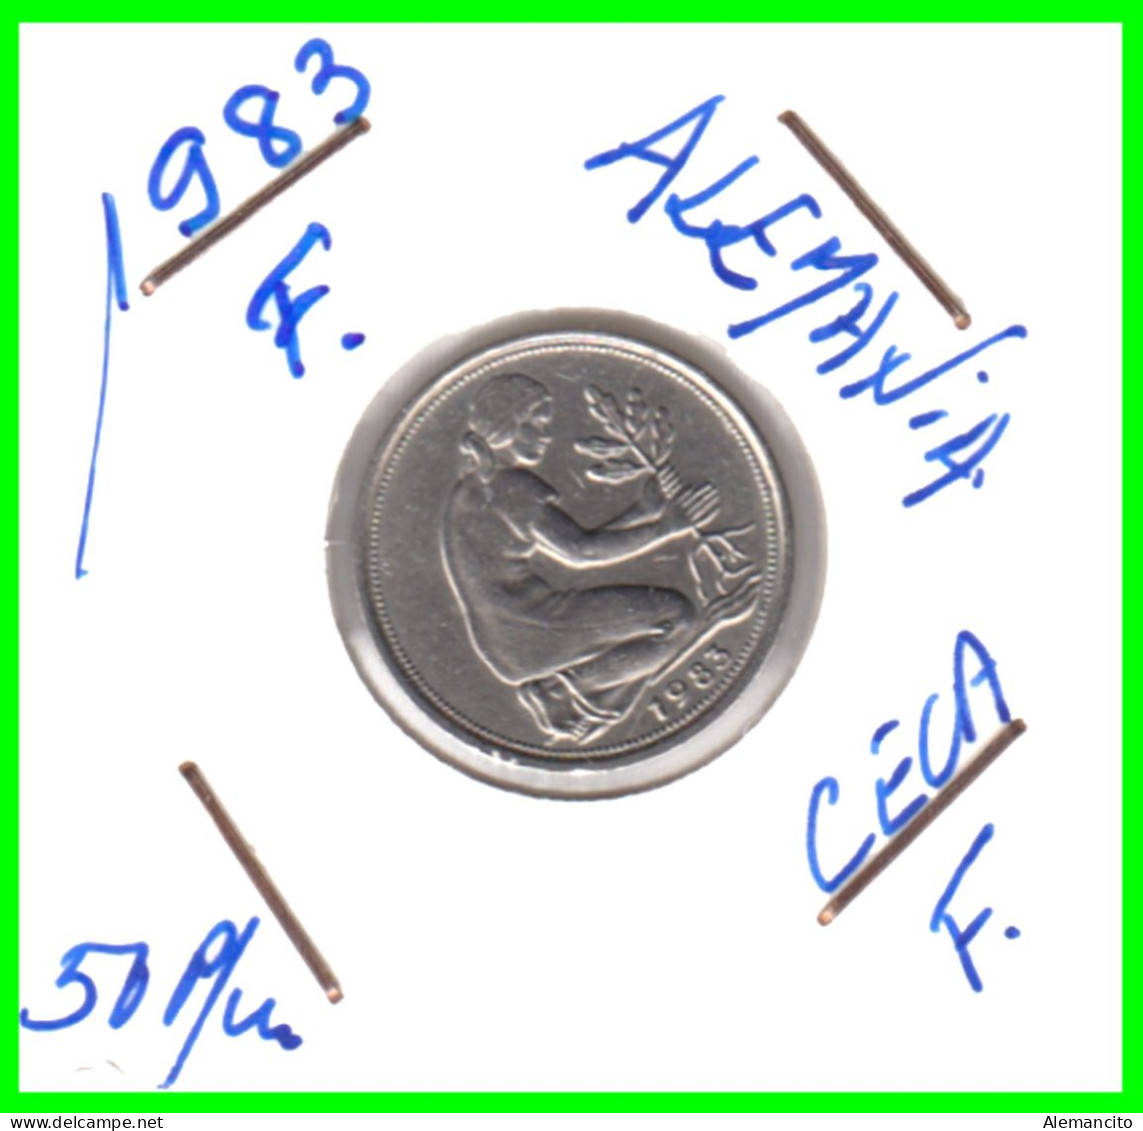 ALEMANIA - DEUTSCHLAND - GERMANY-MONEDA DE LA REPUBLICA FEDERAL DE ALEMIANIA DE 50 Pfn .DEL AÑO 1983 CECA - F -STUTTGART - 50 Pfennig